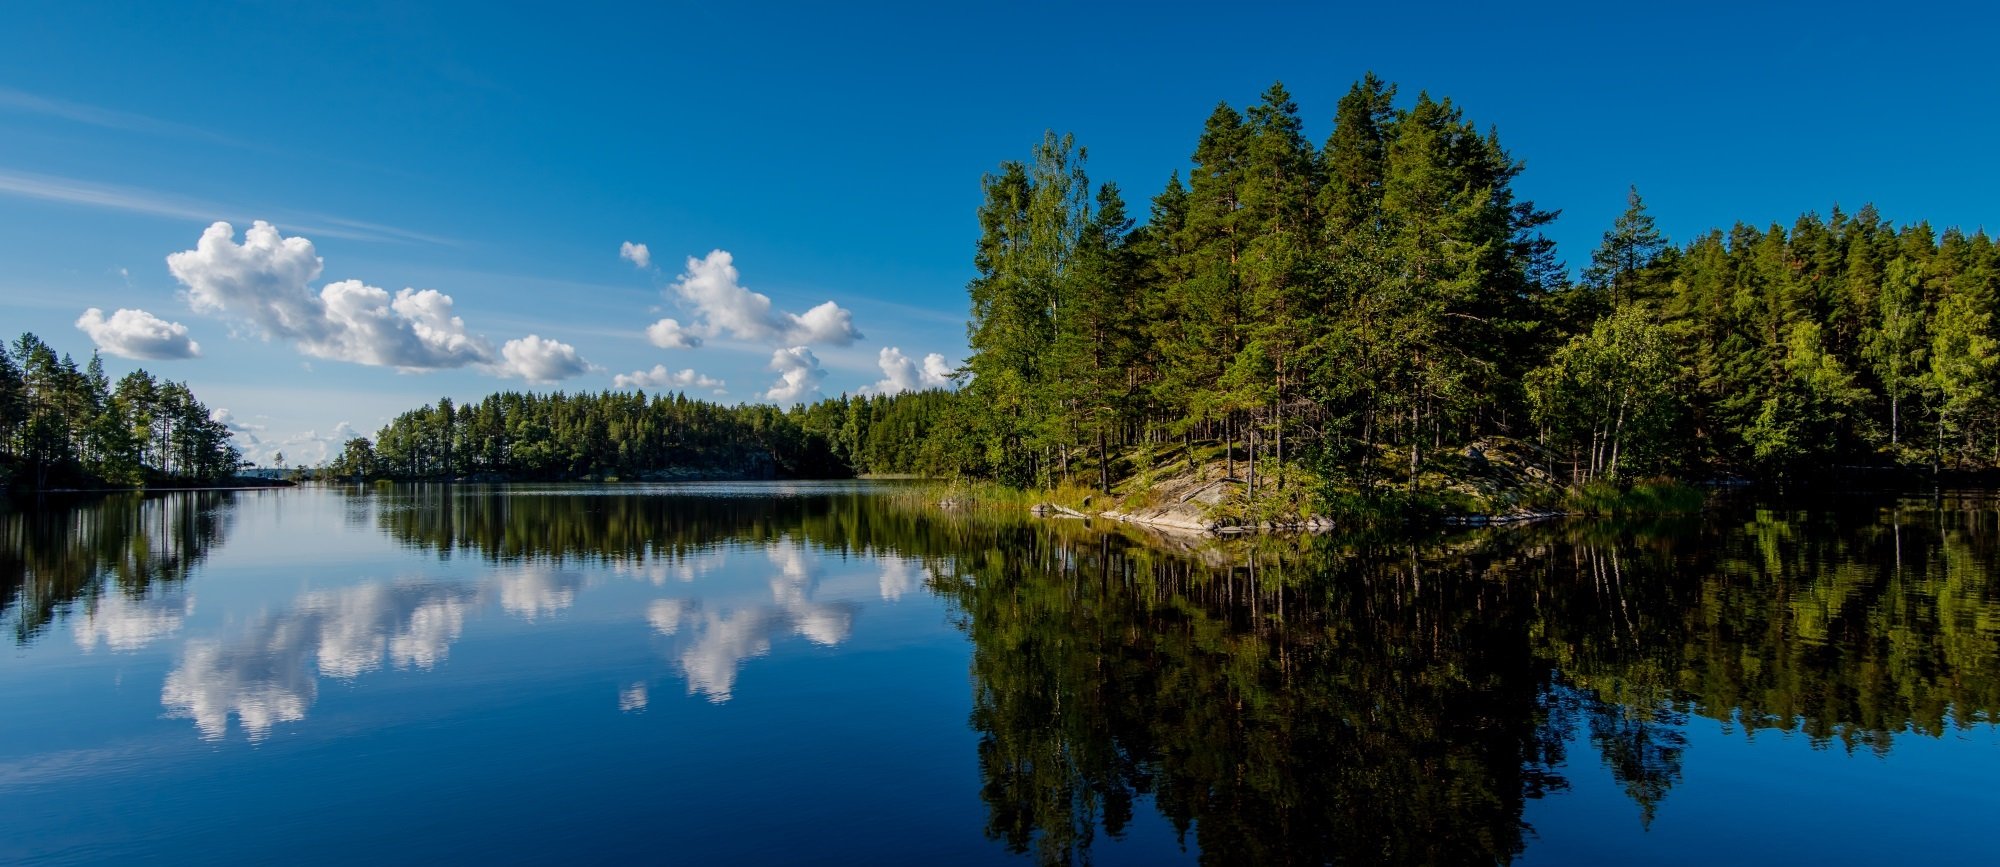 Республика тысячи озер. Озеро Сайма Финляндия. Озерное плато Финляндии. Финляндия Липери озеро. Сайменские озера в Финляндии.